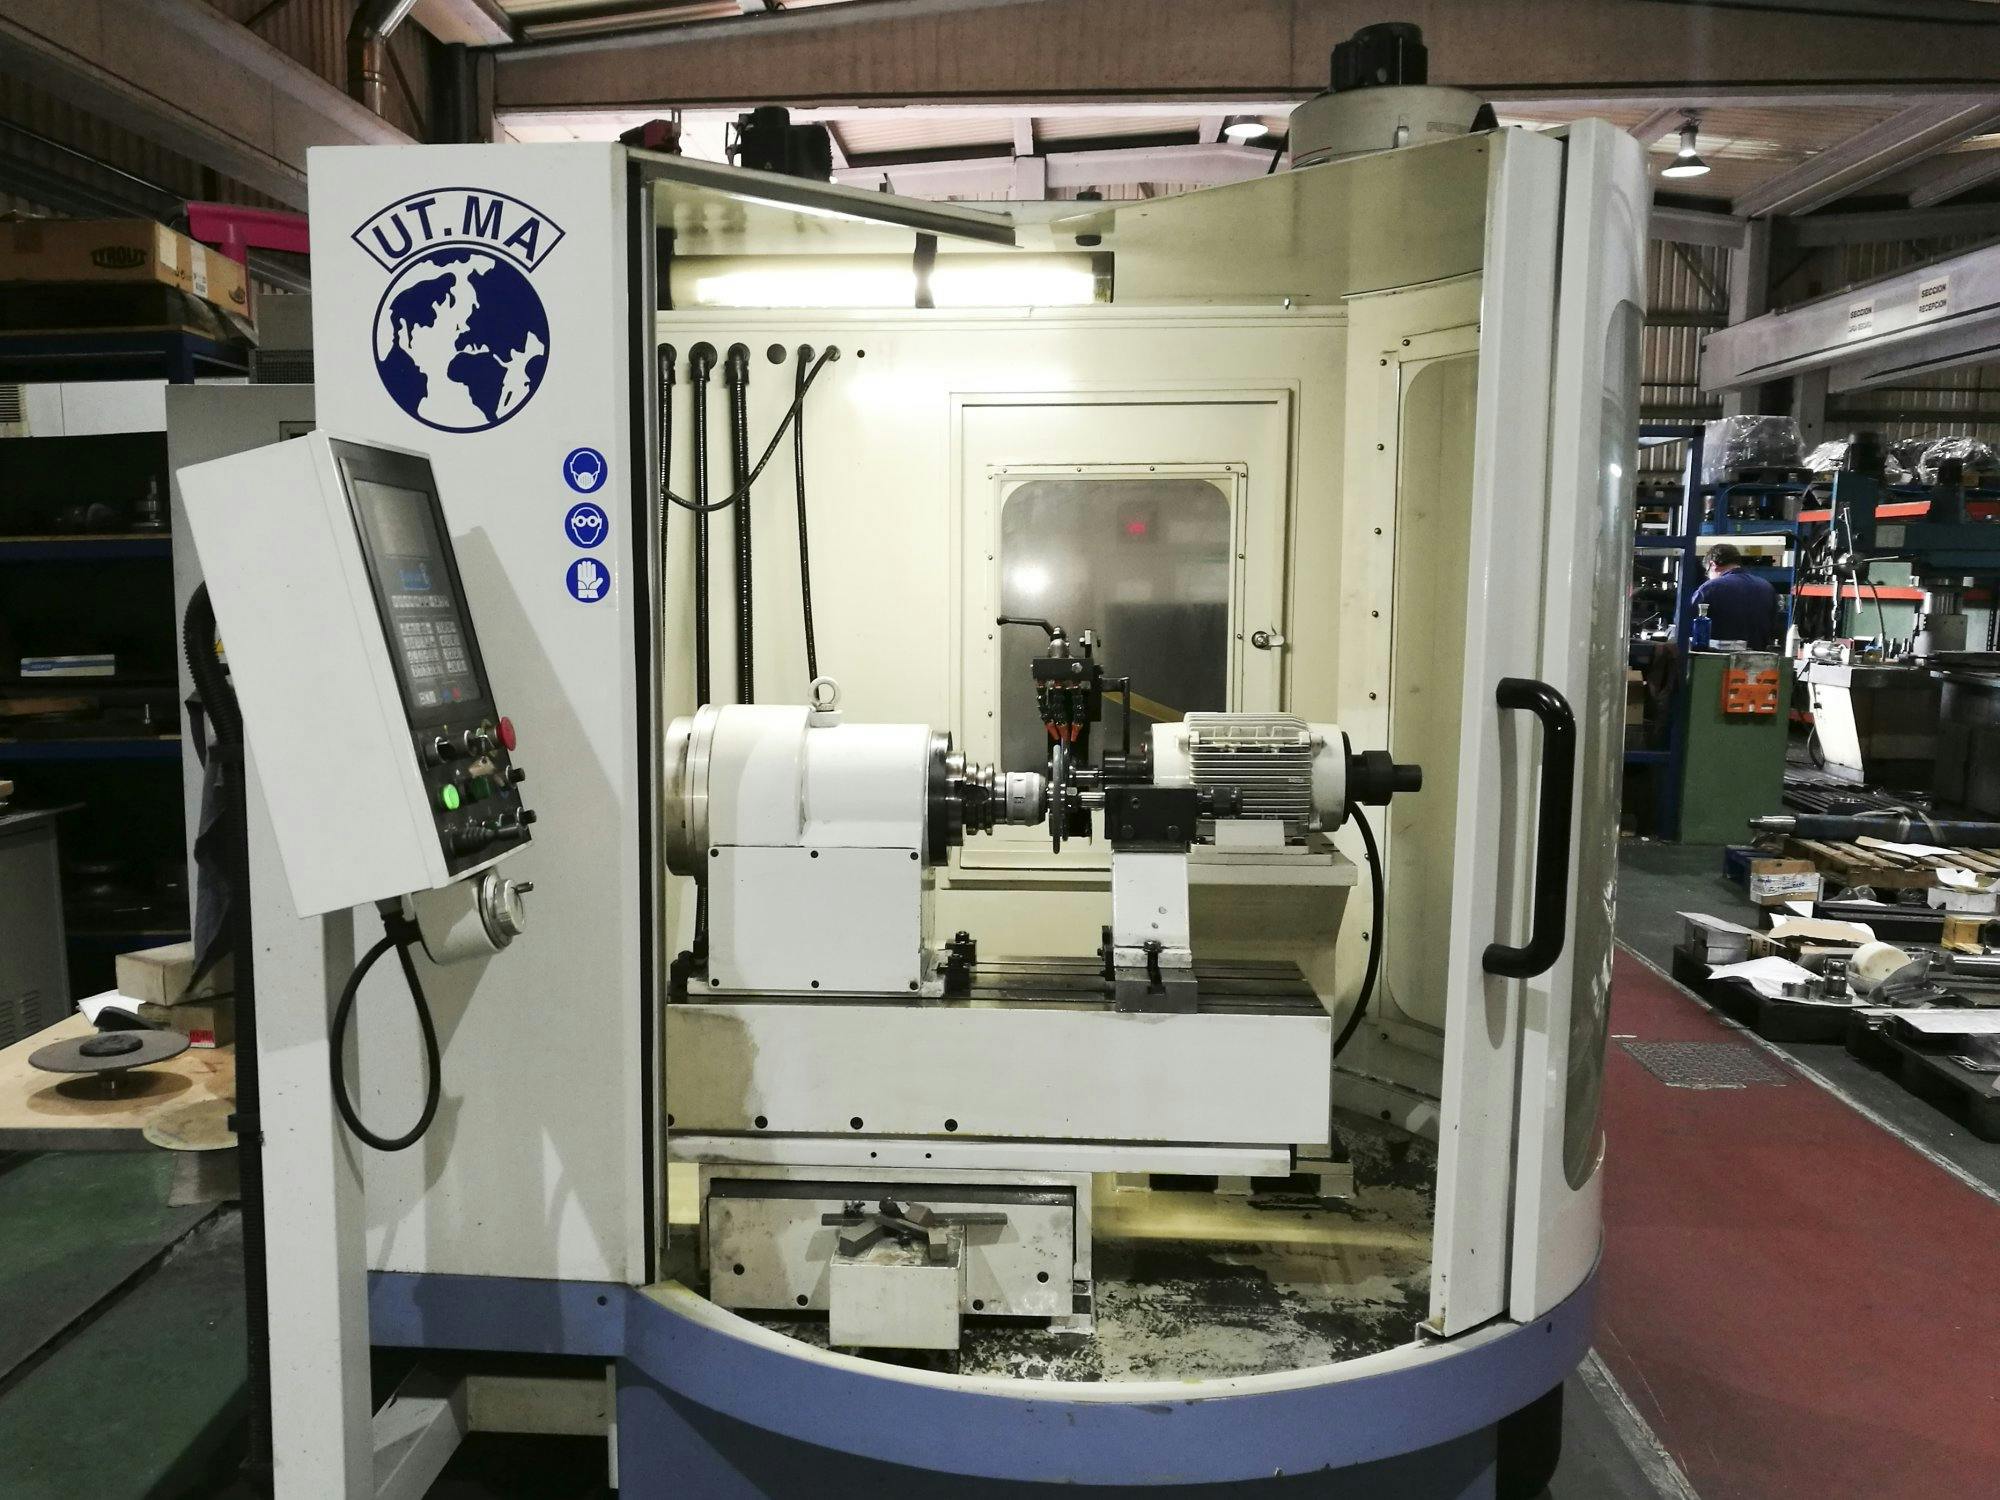 Frontansicht der UT.MA P20 CNC Maschine